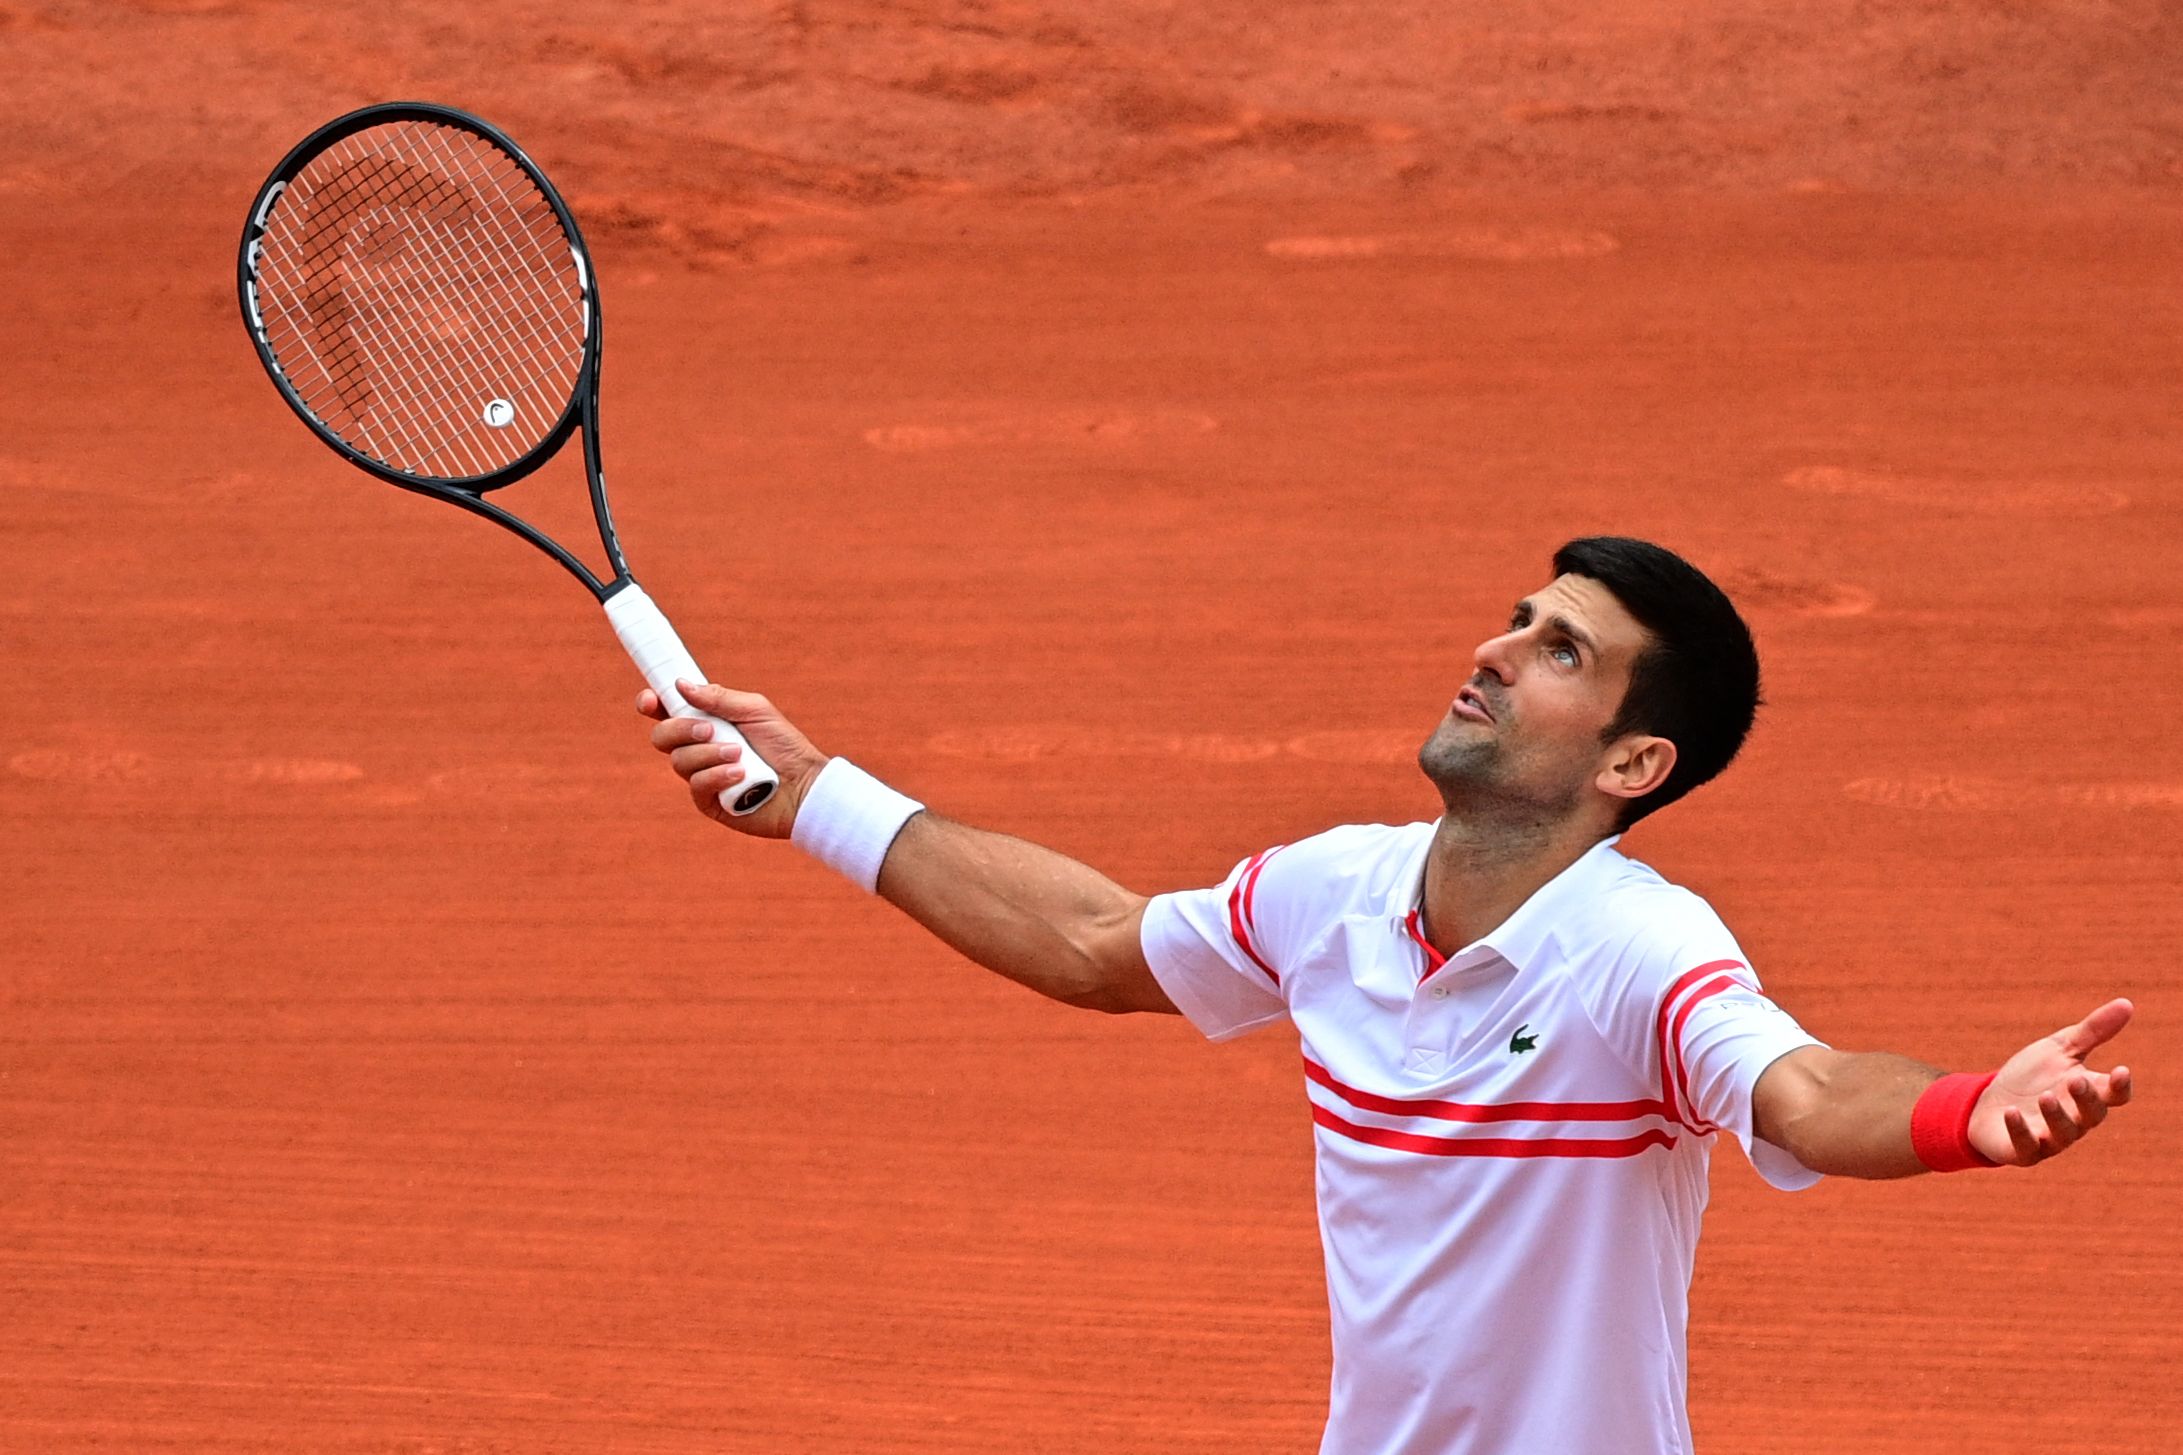 El tenista serbio Novak Djokovic tampoco estaría compitiendo en Francia. (Foto Prensa Libre: AFP)